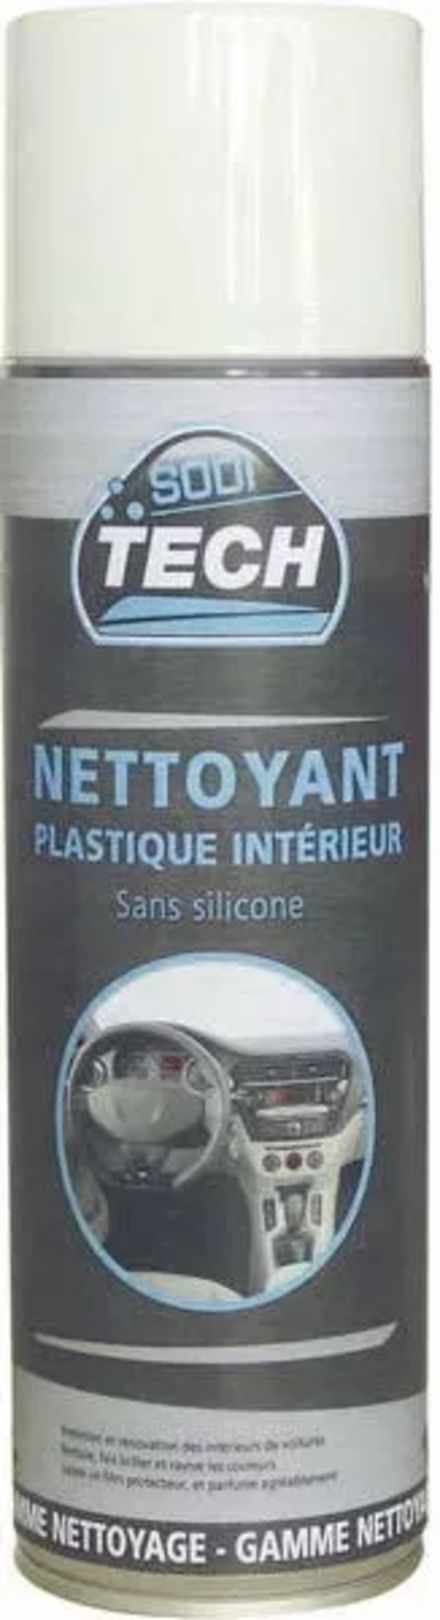 Nettoyant plastique interieur sans silicone SODITECH - 10180